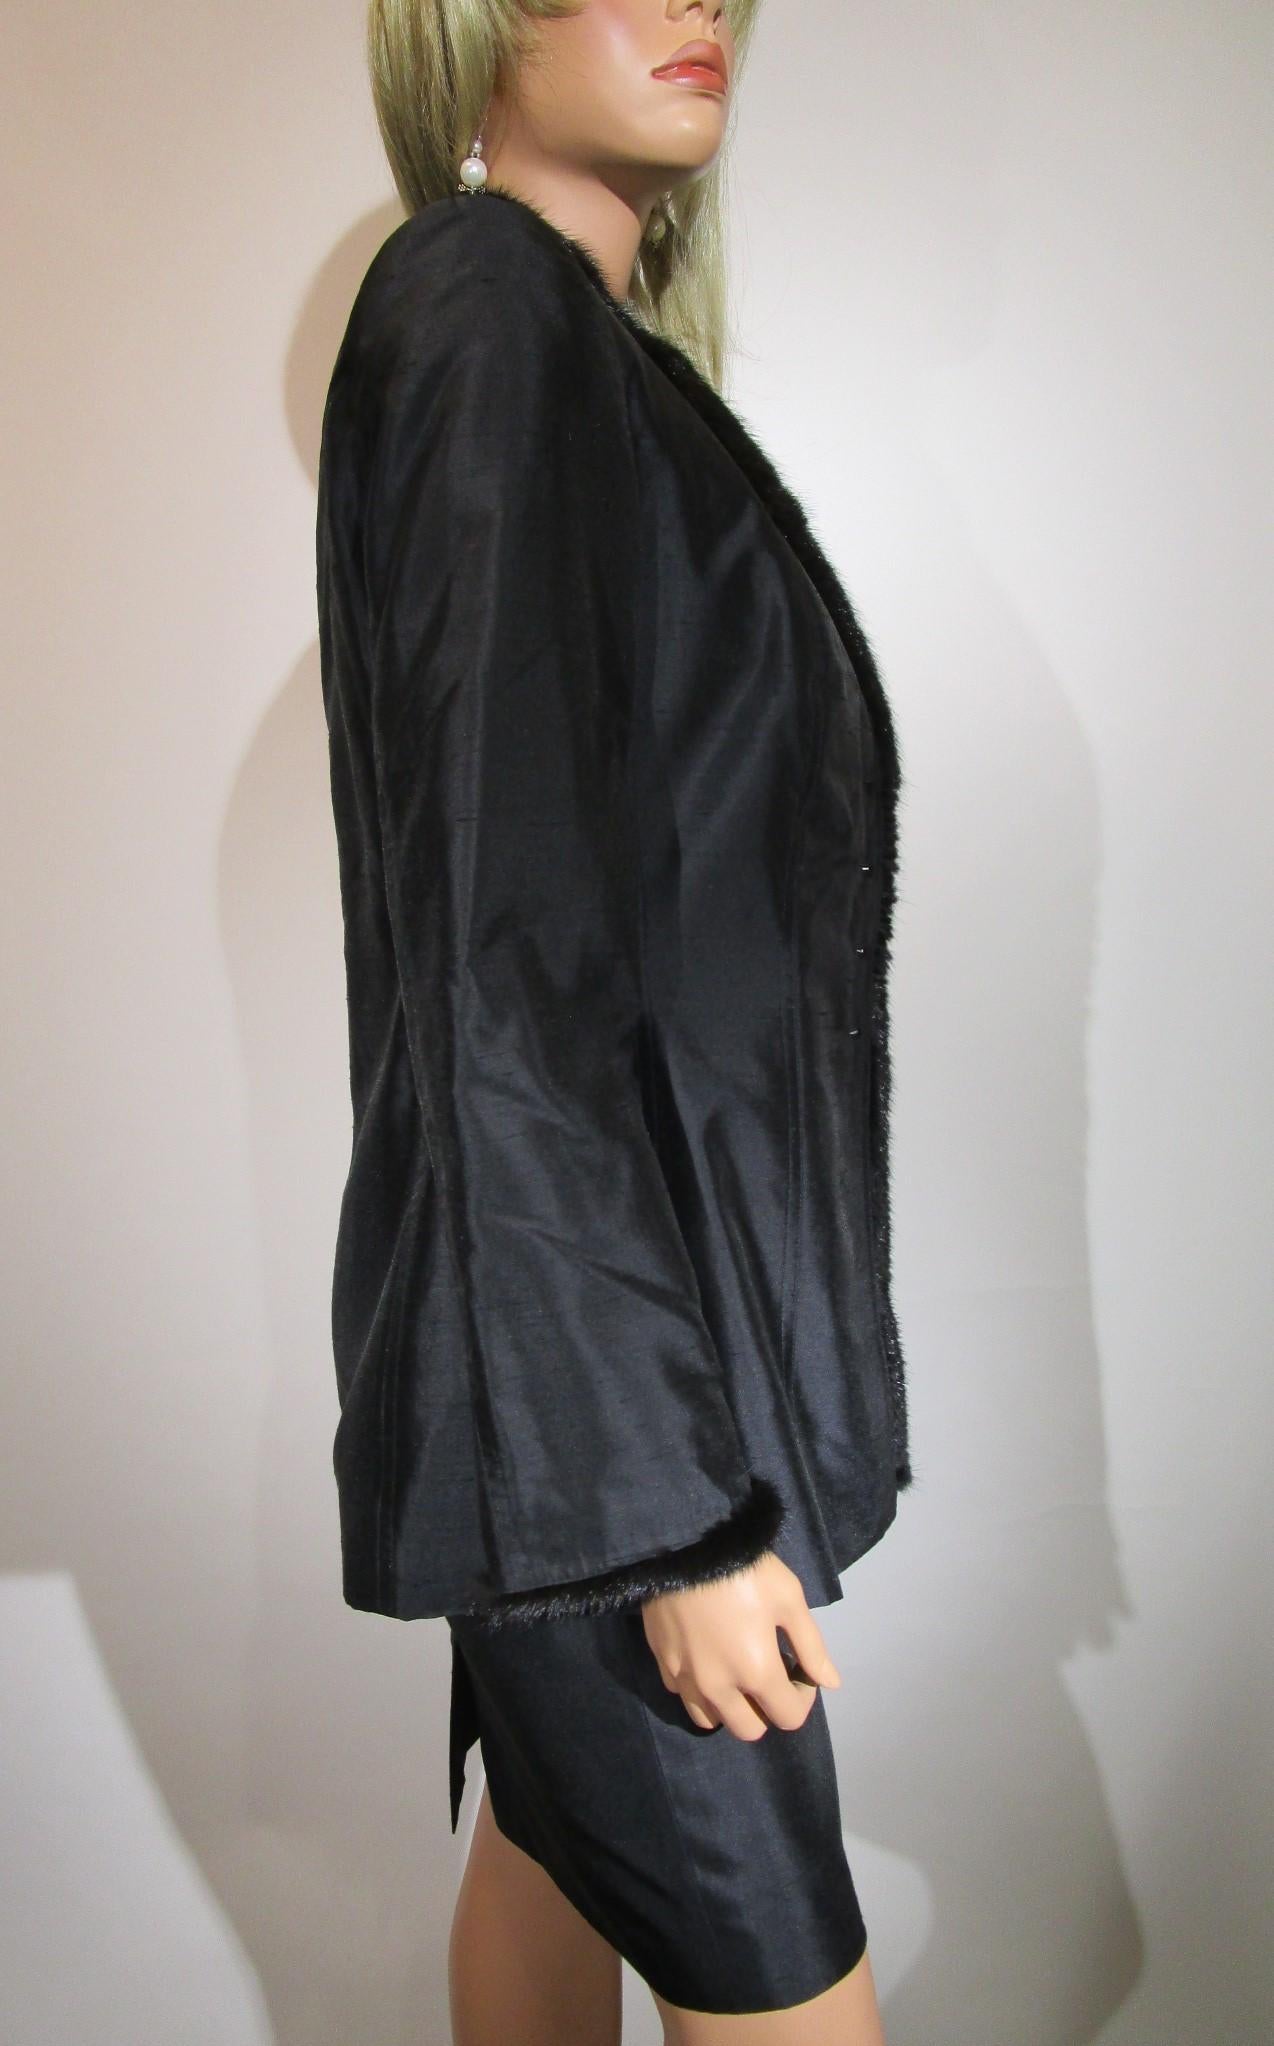 ESCADA 3-piece Set MINK Trim Black Blazer Skirt Tank Top Jacket Sz 36/ US6 For Sale 1